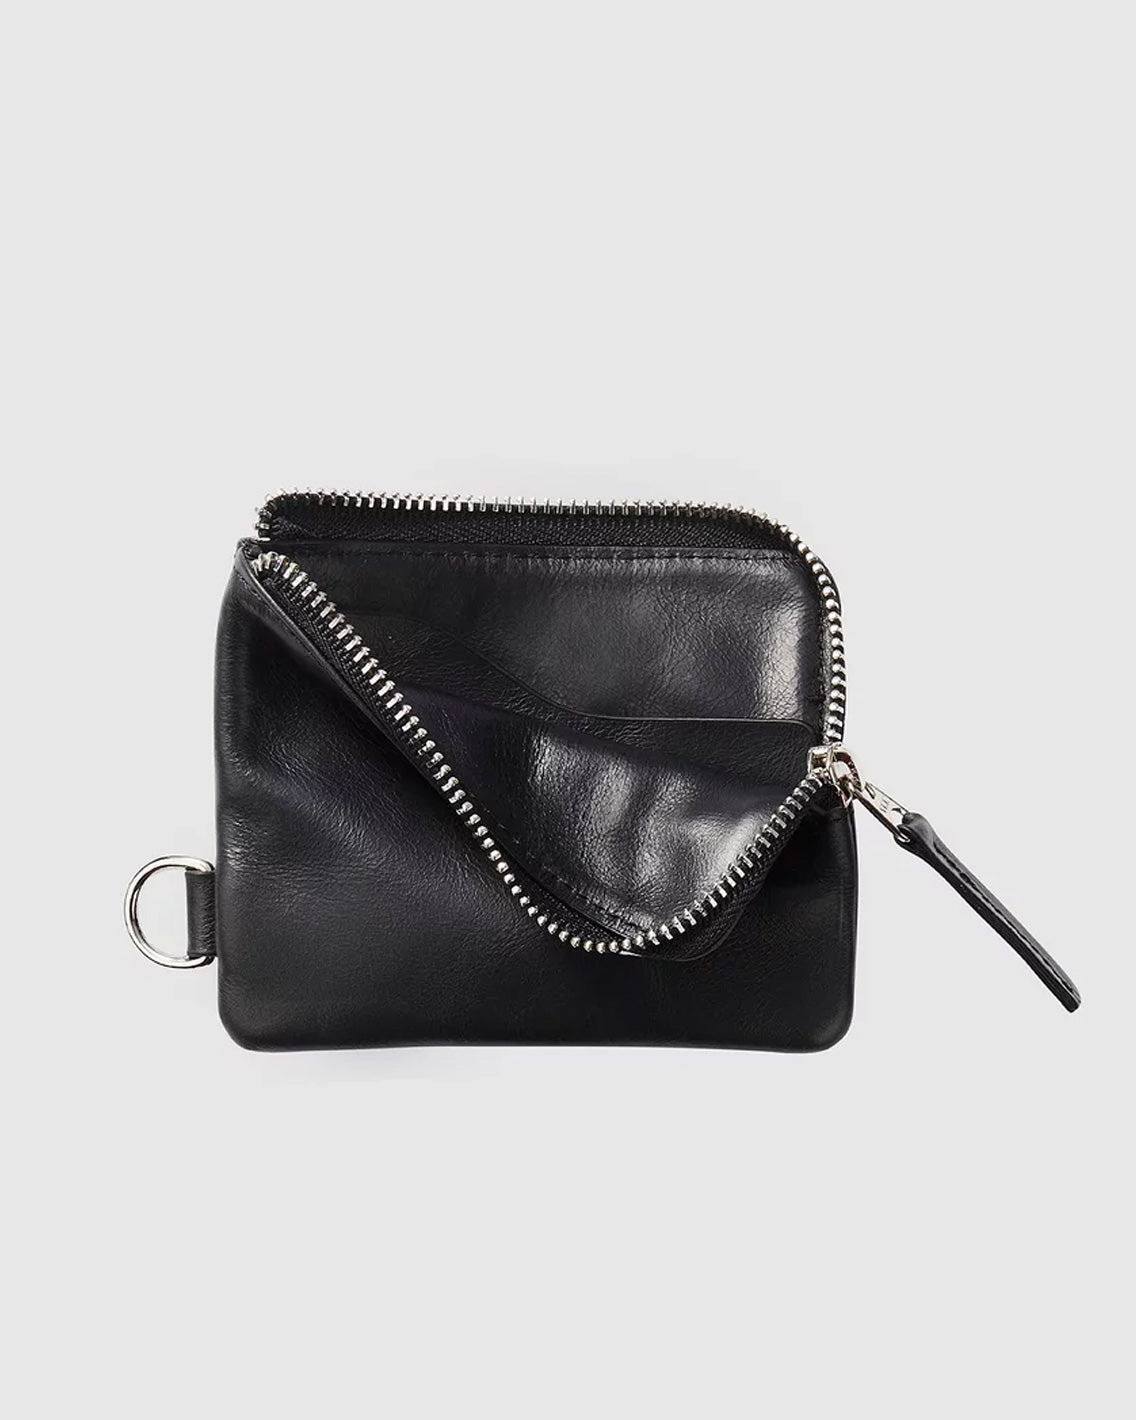 Atlas - Wallet 01 - Black Leather